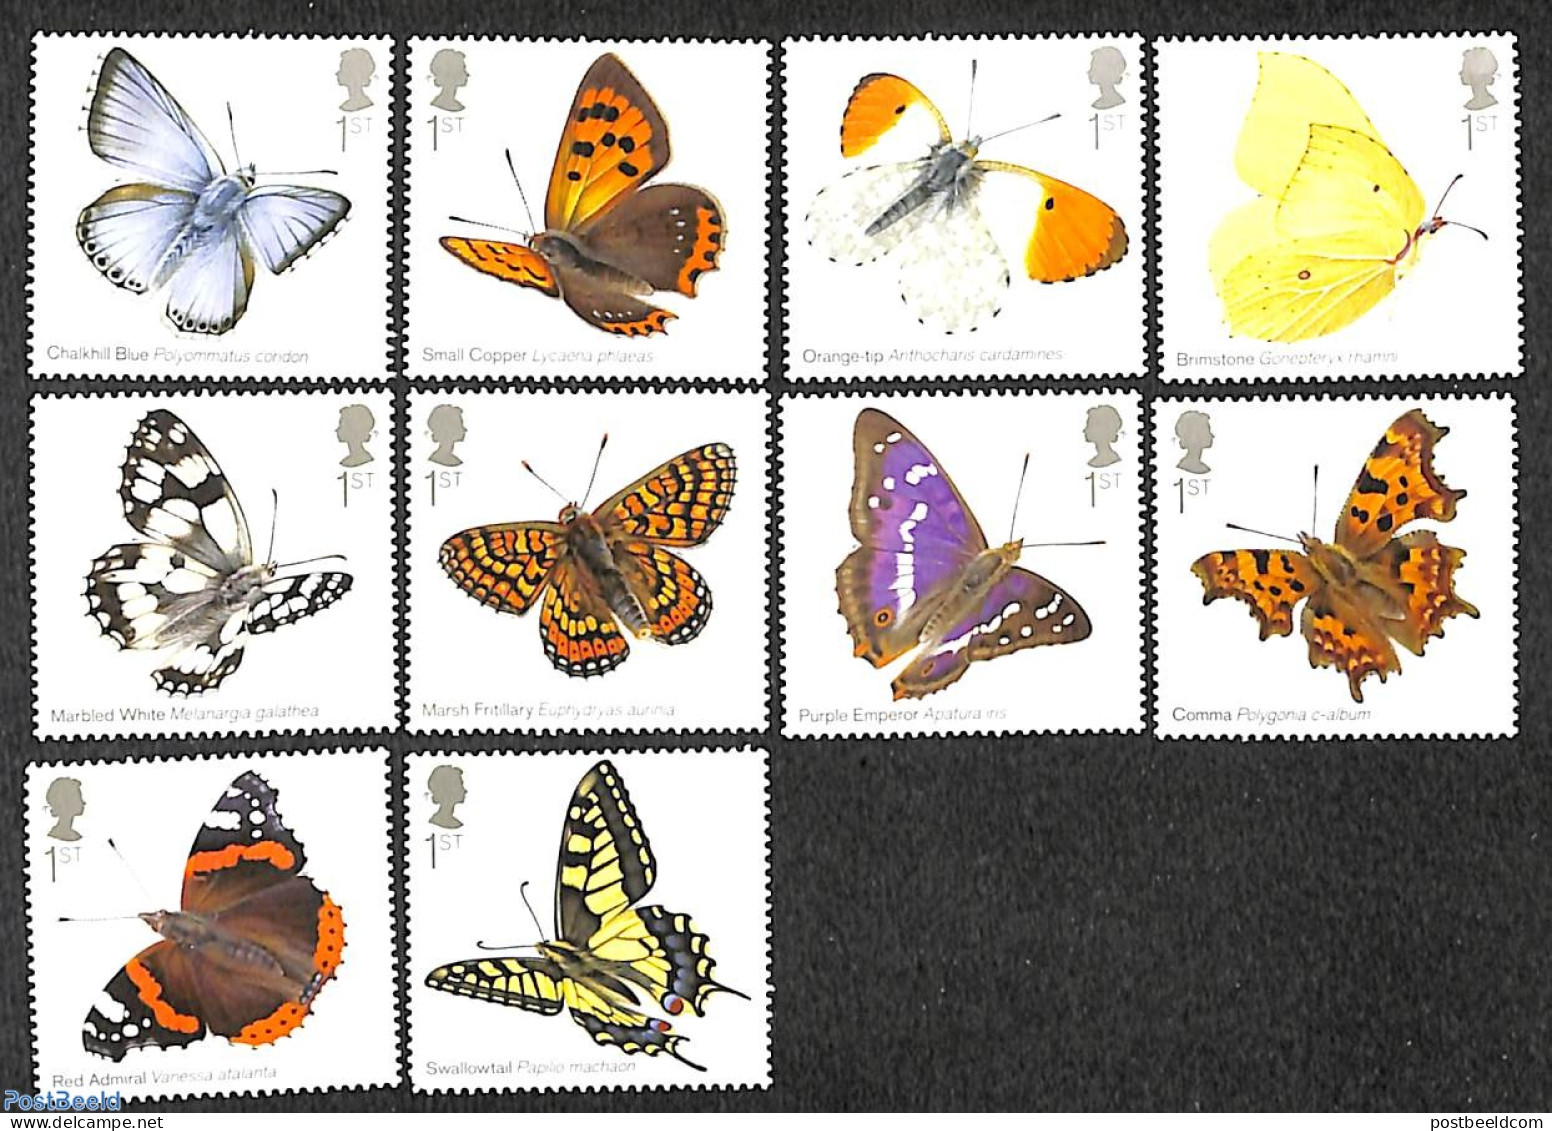 Great Britain 2013 Butterflies 10v, Mint NH, Nature - Butterflies - Ongebruikt